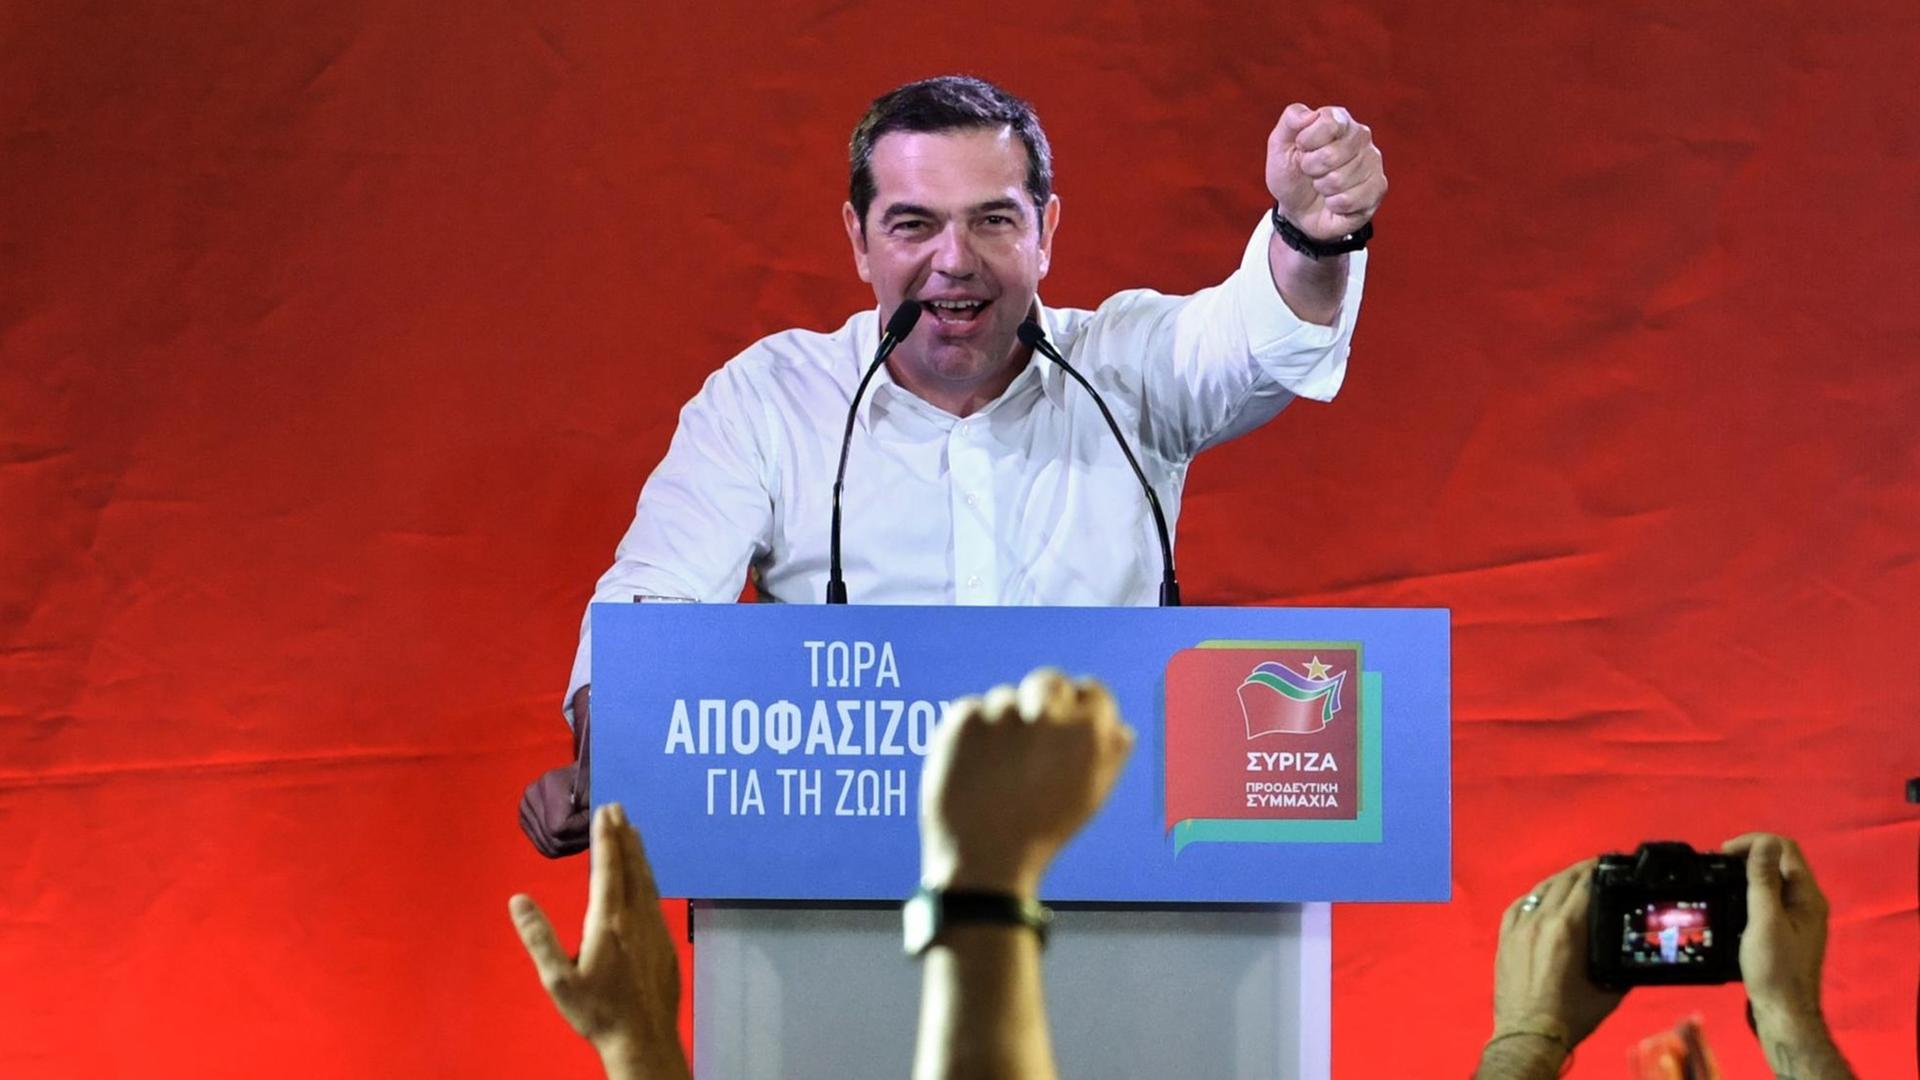 Der griechische Ministerpräsident Alexis Tsipras (Syriza) bei einer Wahlkampfveranstaltung im Stadtteil Thisio in Athen, aufgenomme am 18. Juni 2019